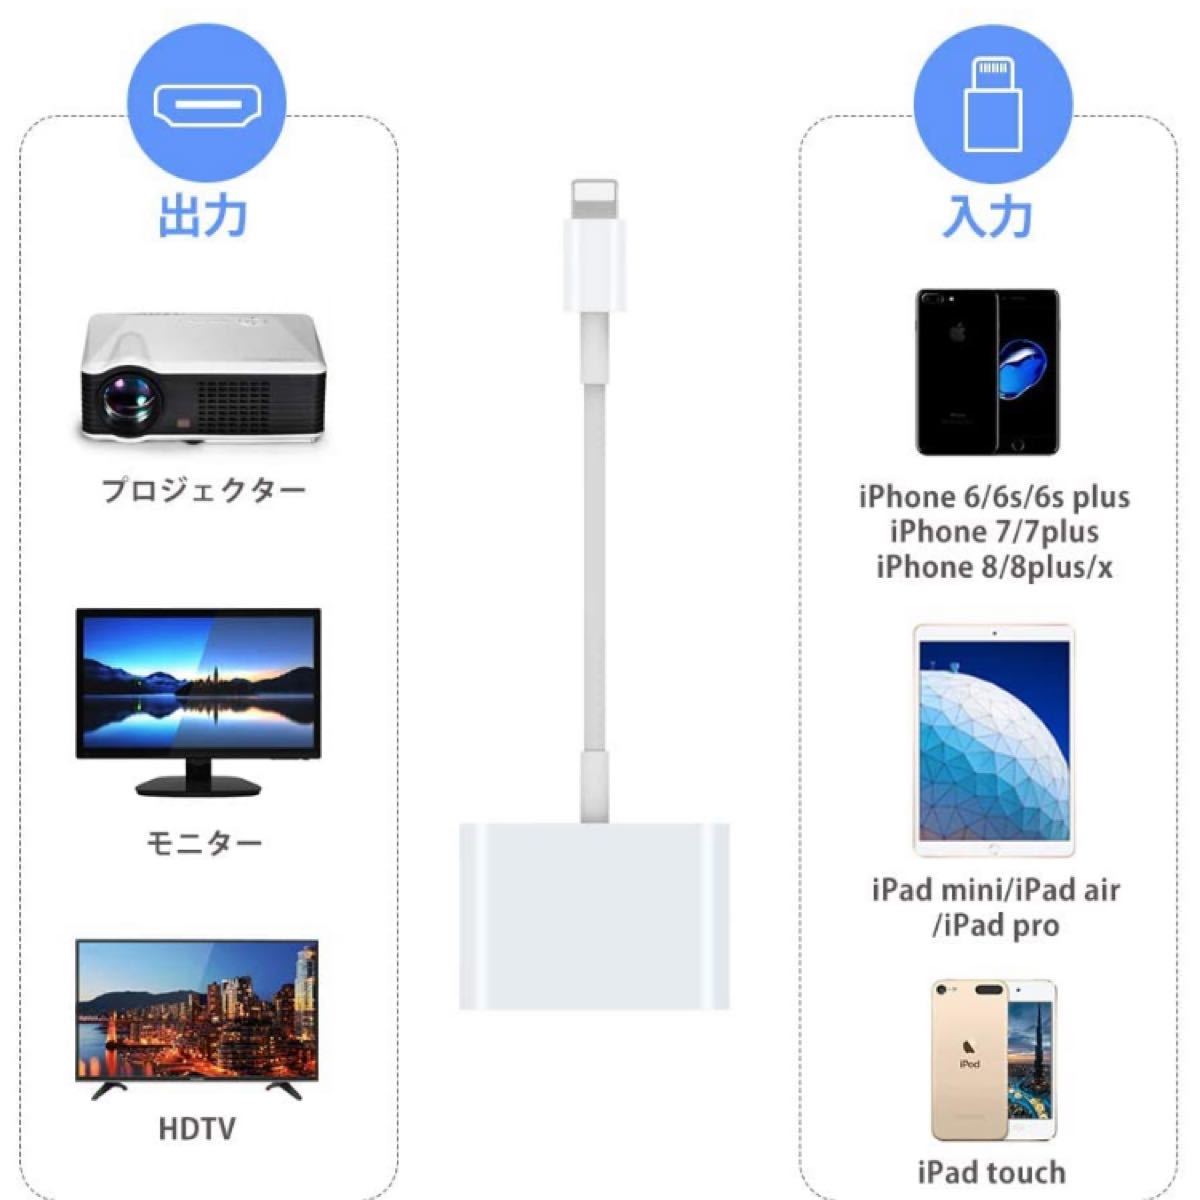 【2020令和最新型】iPhone HDMI 変換ケーブル 